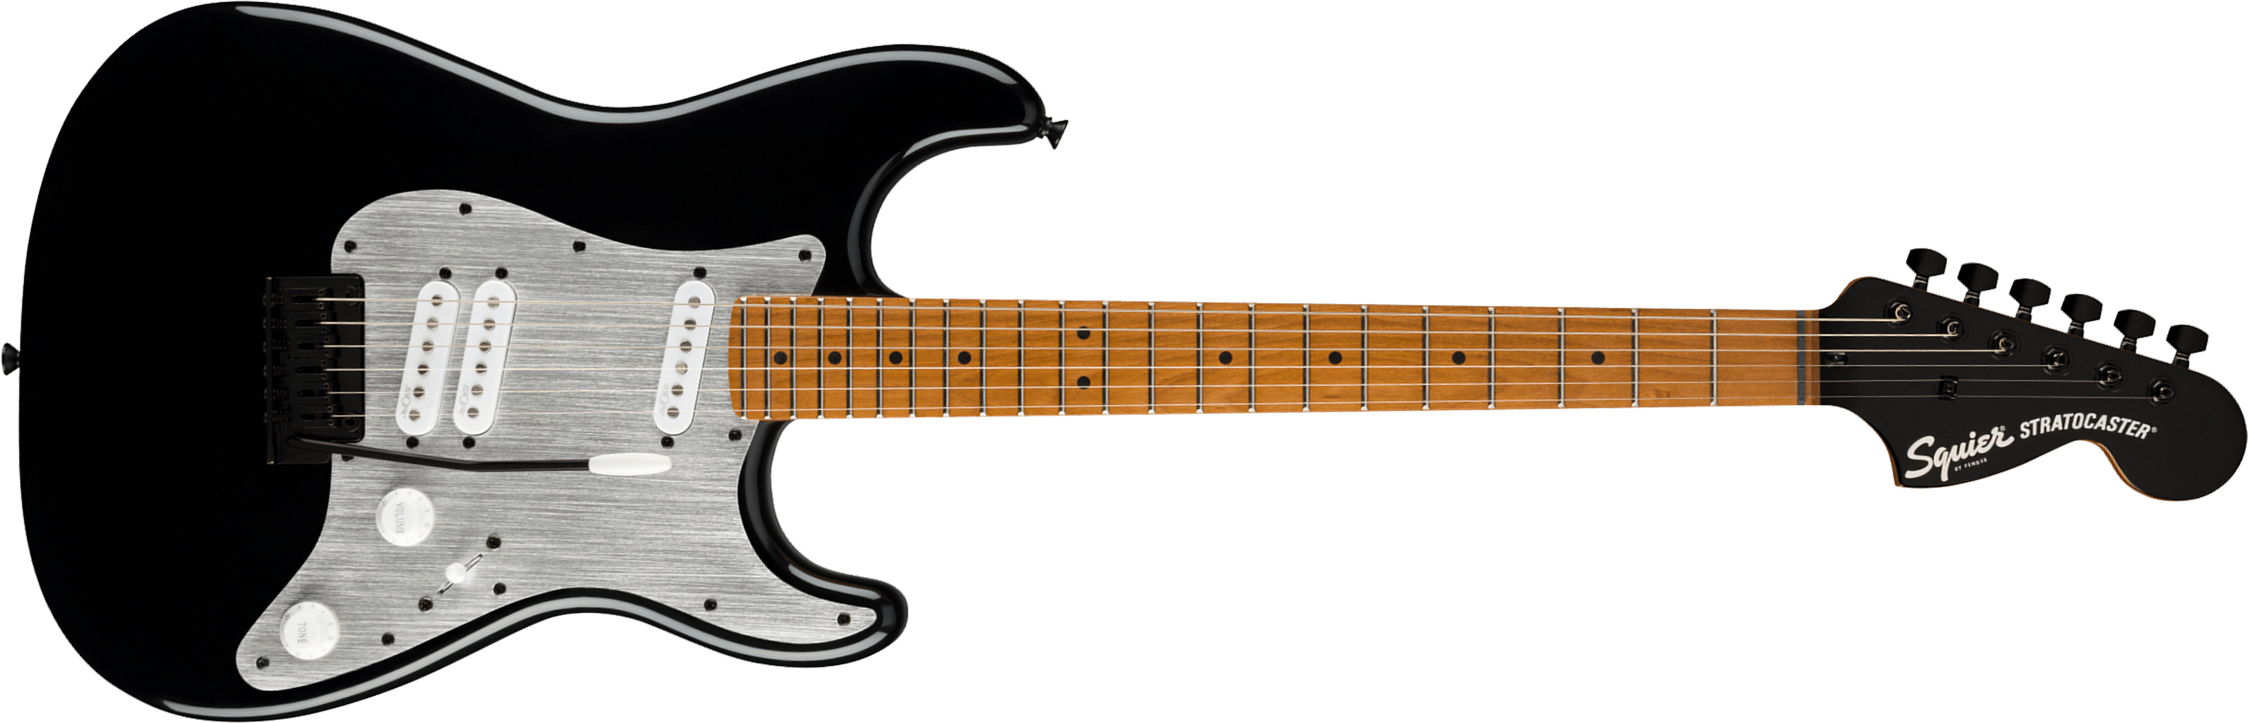 Squier Strat Contemporary Special Sss Trem Mn - Black - Guitare Électrique Forme Str - Main picture